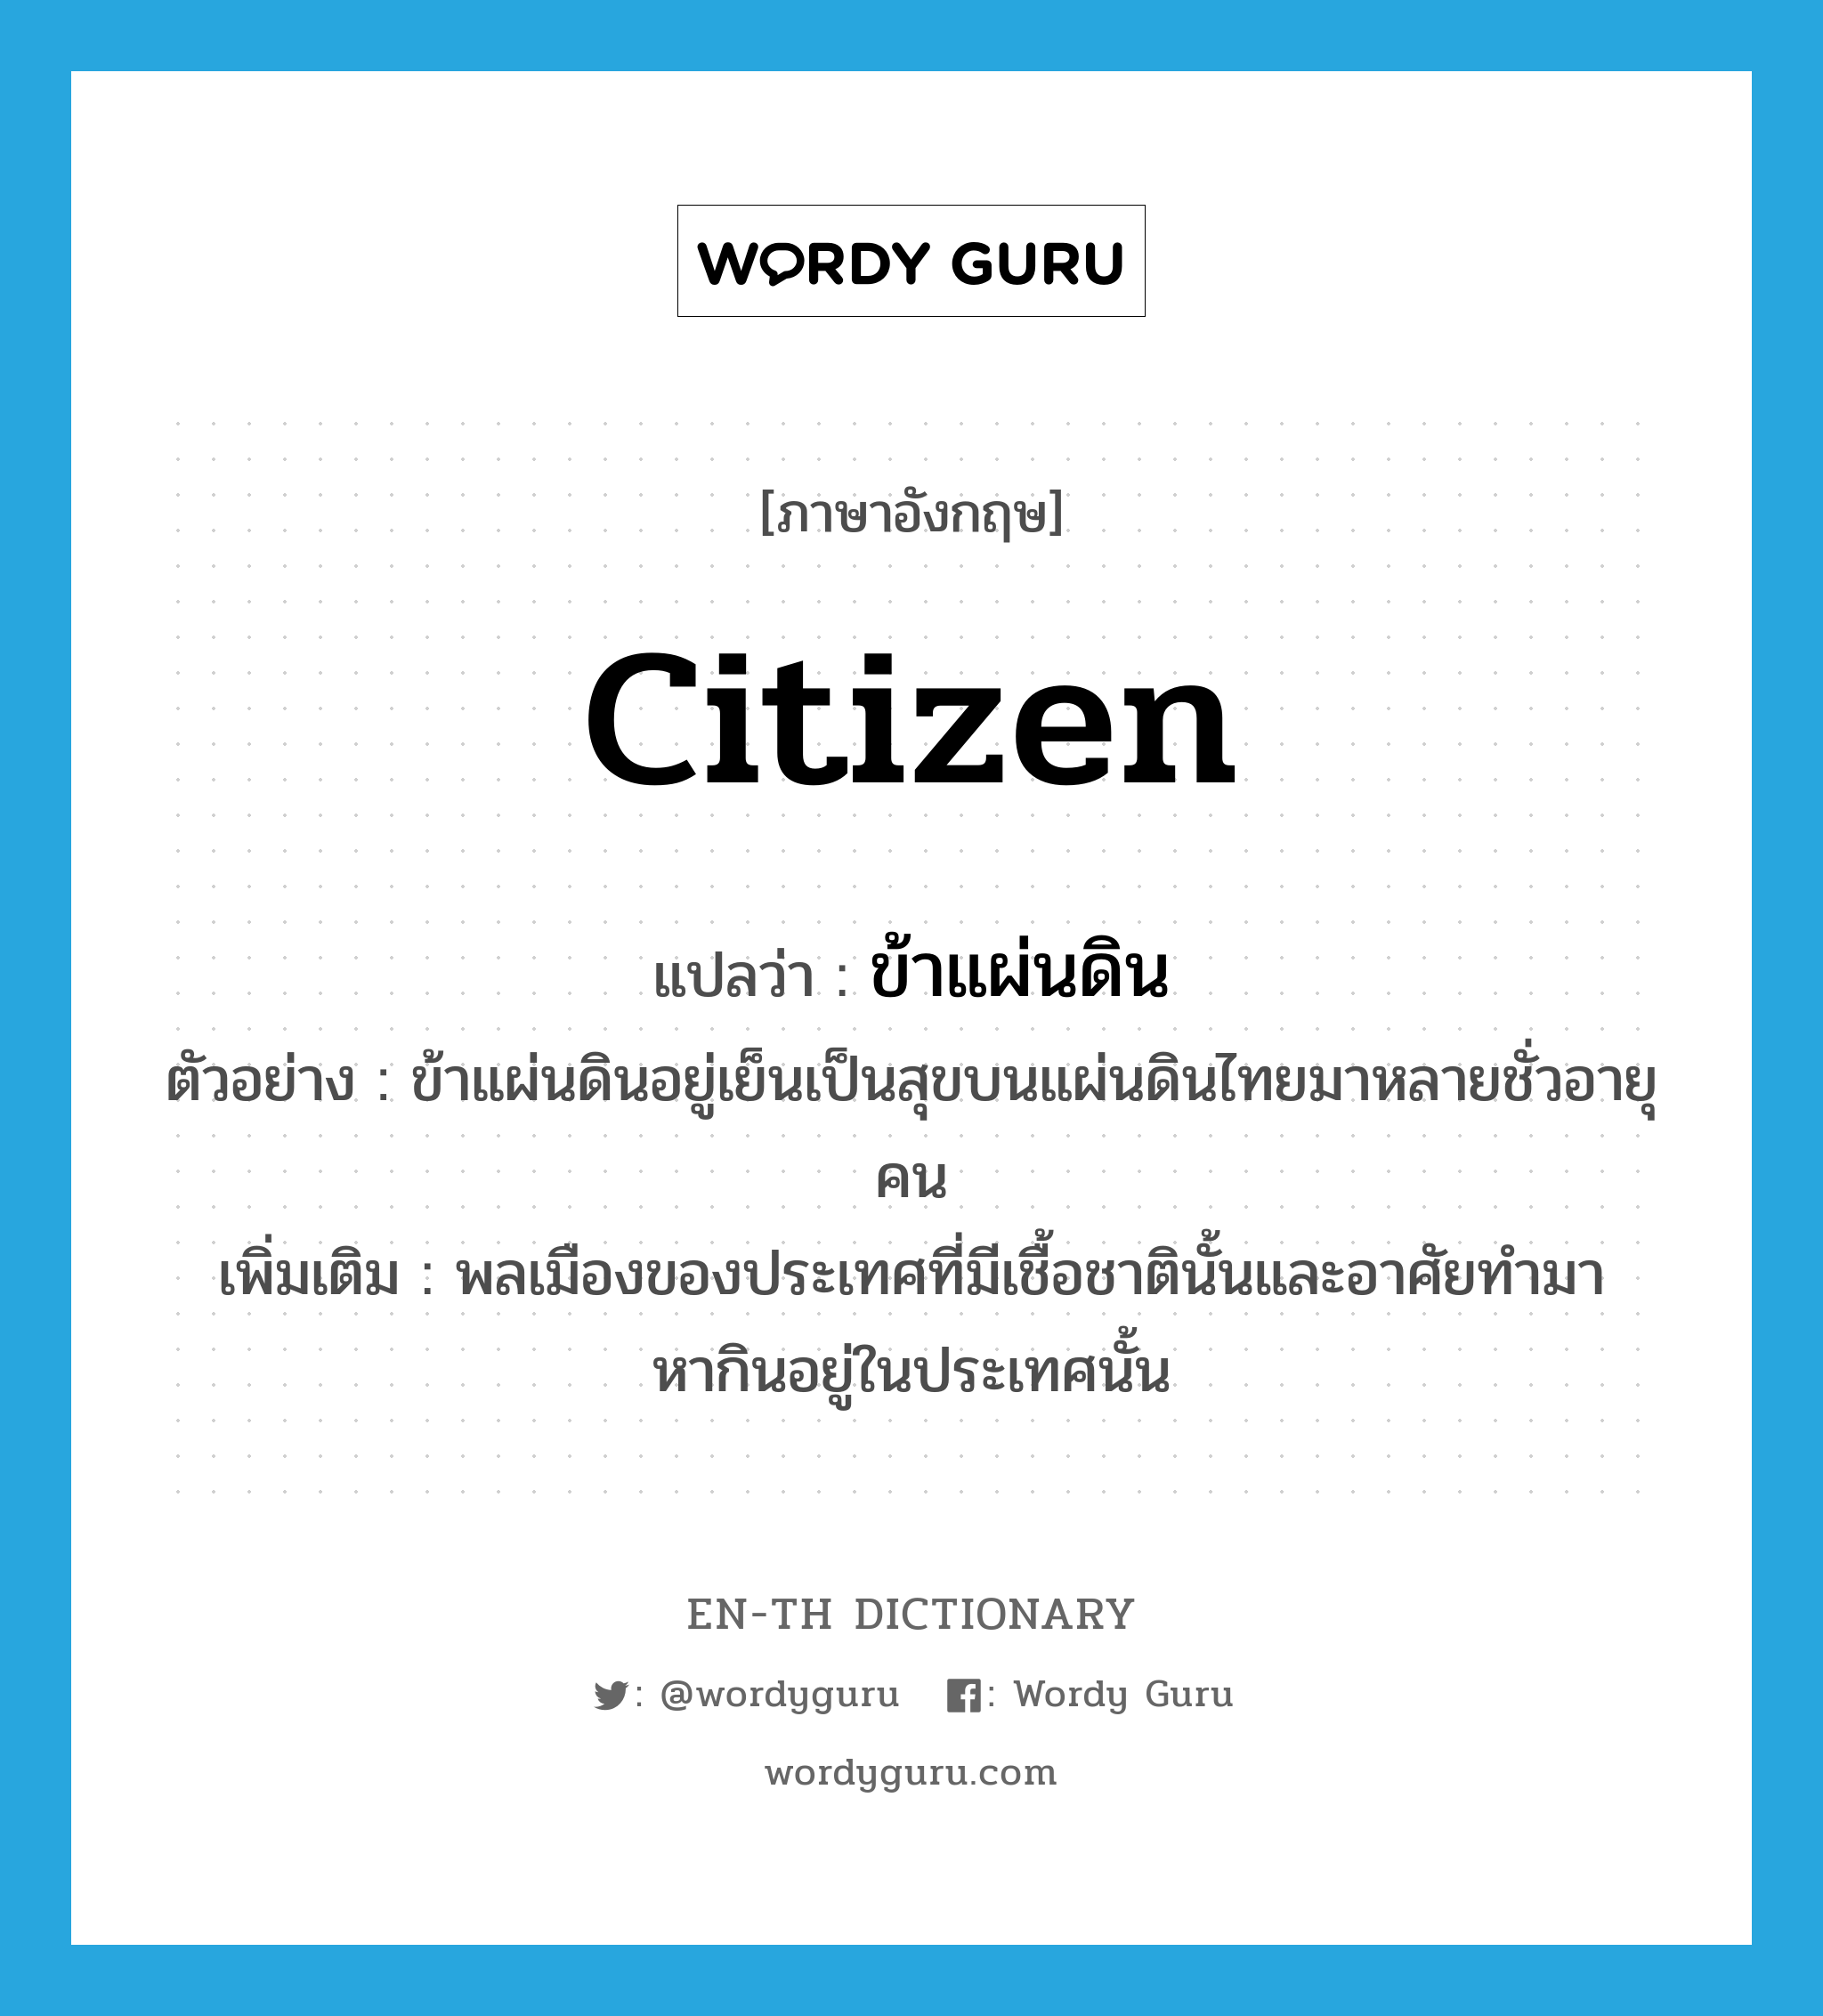 citizen แปลว่า?, คำศัพท์ภาษาอังกฤษ citizen แปลว่า ข้าแผ่นดิน ประเภท N ตัวอย่าง ข้าแผ่นดินอยู่เย็นเป็นสุขบนแผ่นดินไทยมาหลายชั่วอายุคน เพิ่มเติม พลเมืองของประเทศที่มีเชื้อชาตินั้นและอาศัยทำมาหากินอยู่ในประเทศนั้น หมวด N